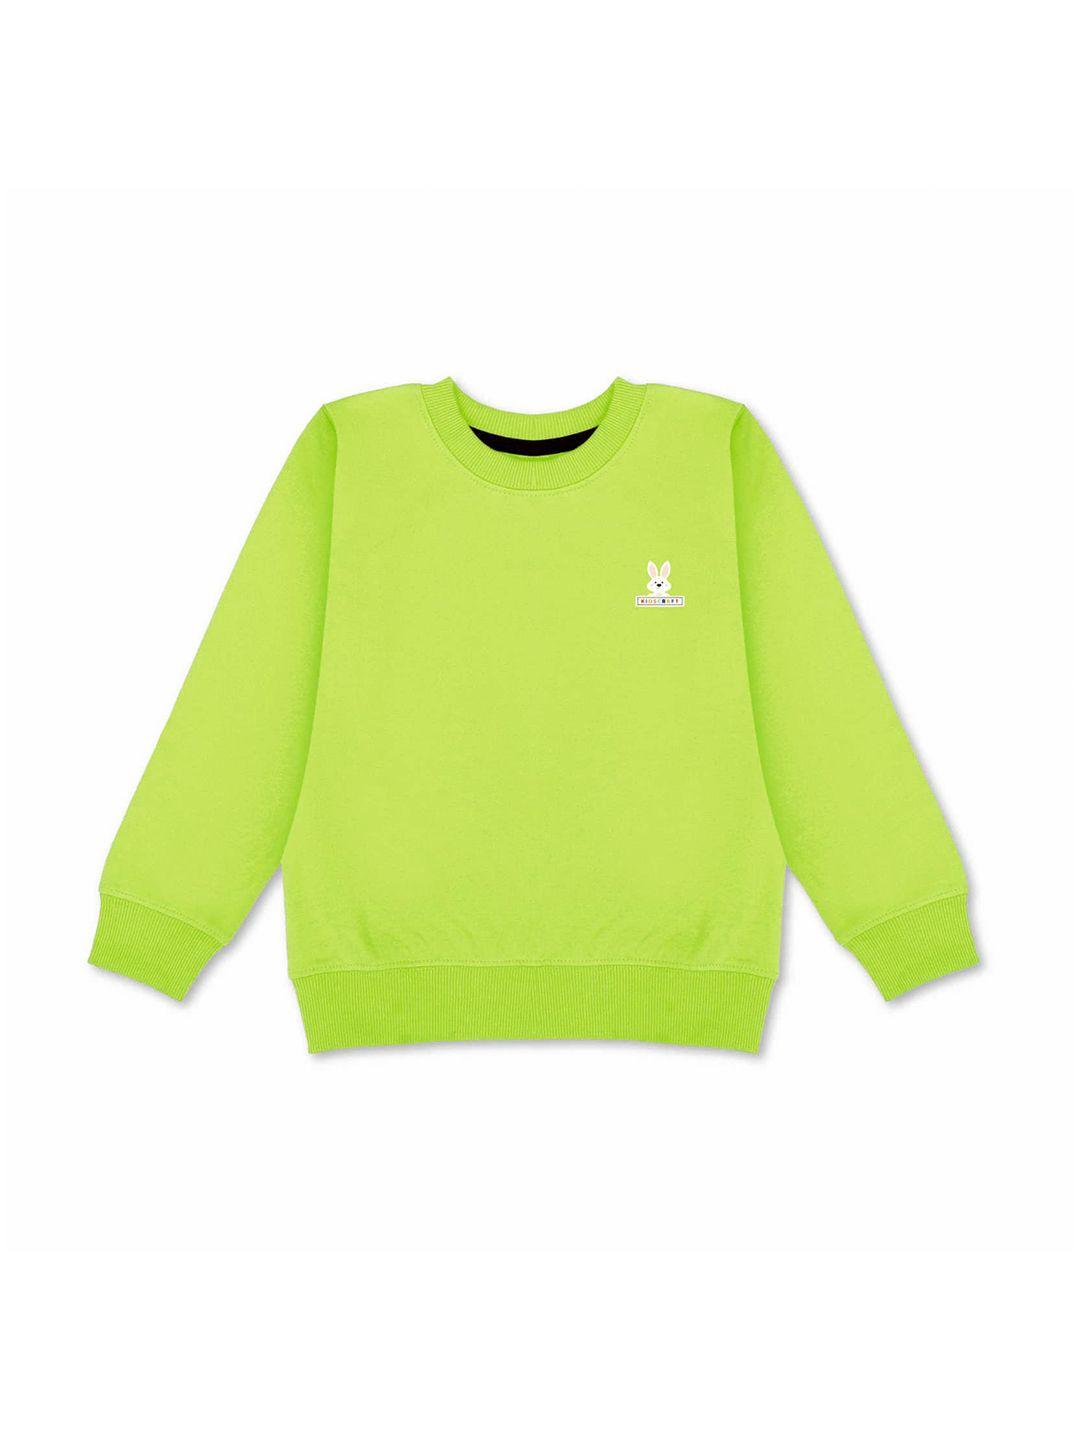 kidscraft-boys-lime-green-sweatshirt